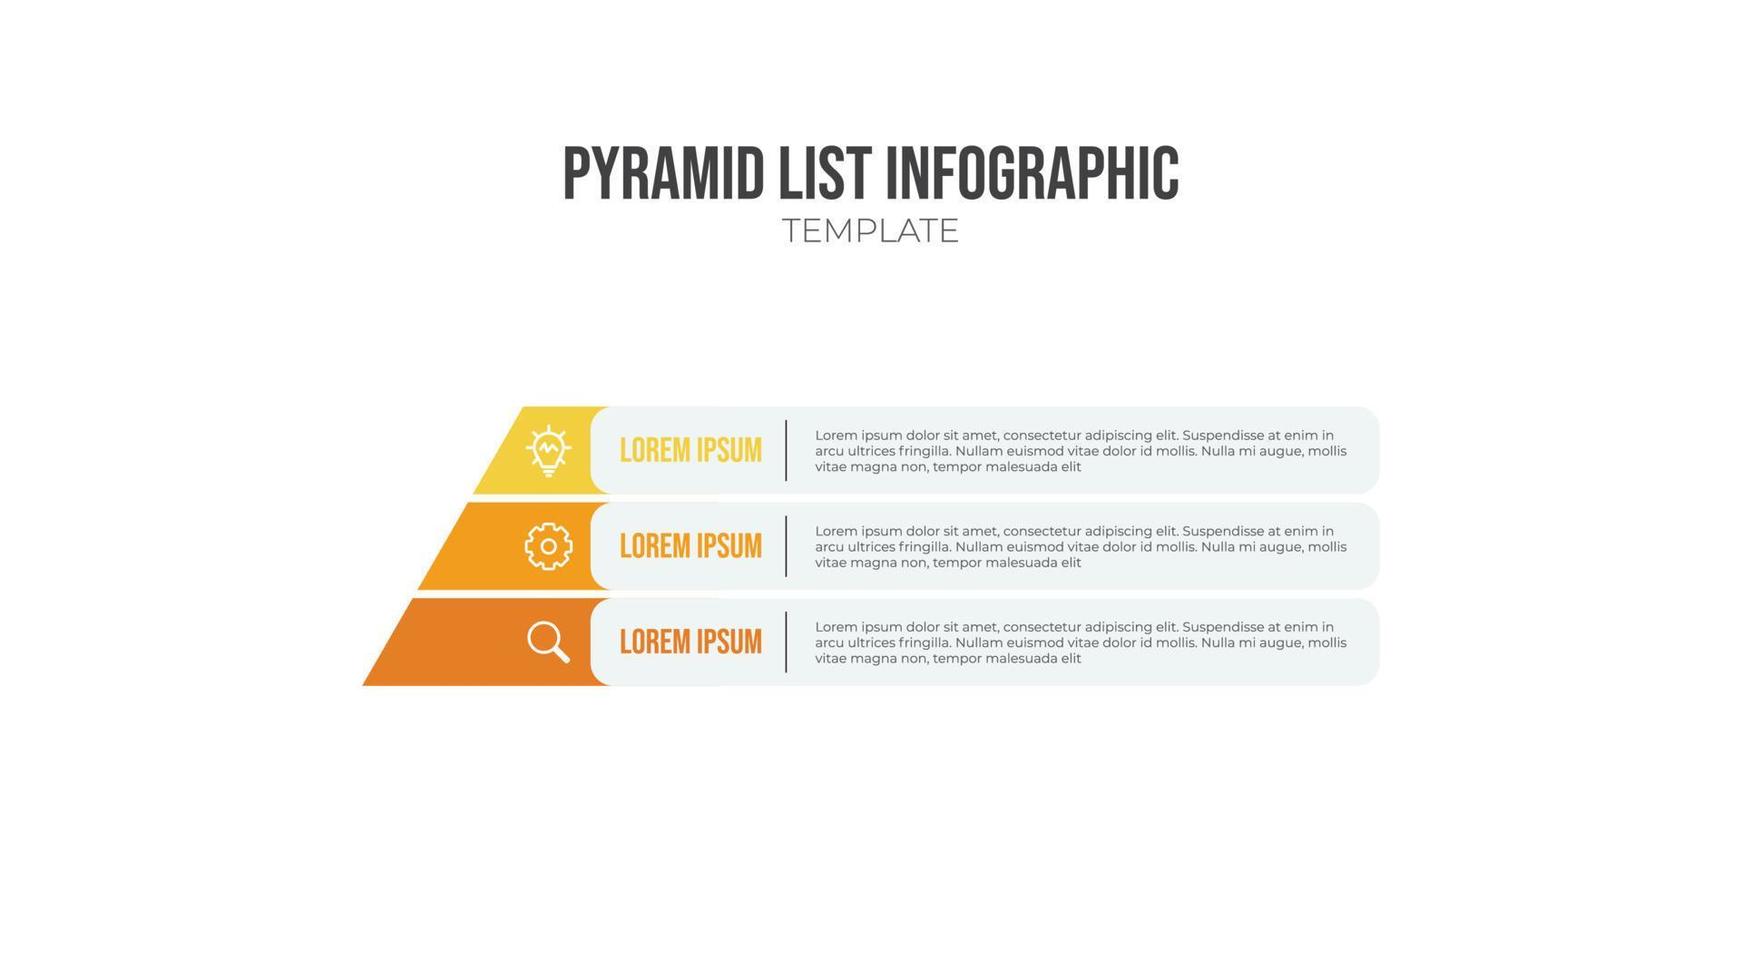 vector de elementos infográficos de lista piramidal, plantilla de 3 listas con iconos. Se utiliza para mostrar relaciones proporcionales, interconectadas o jerárquicas.